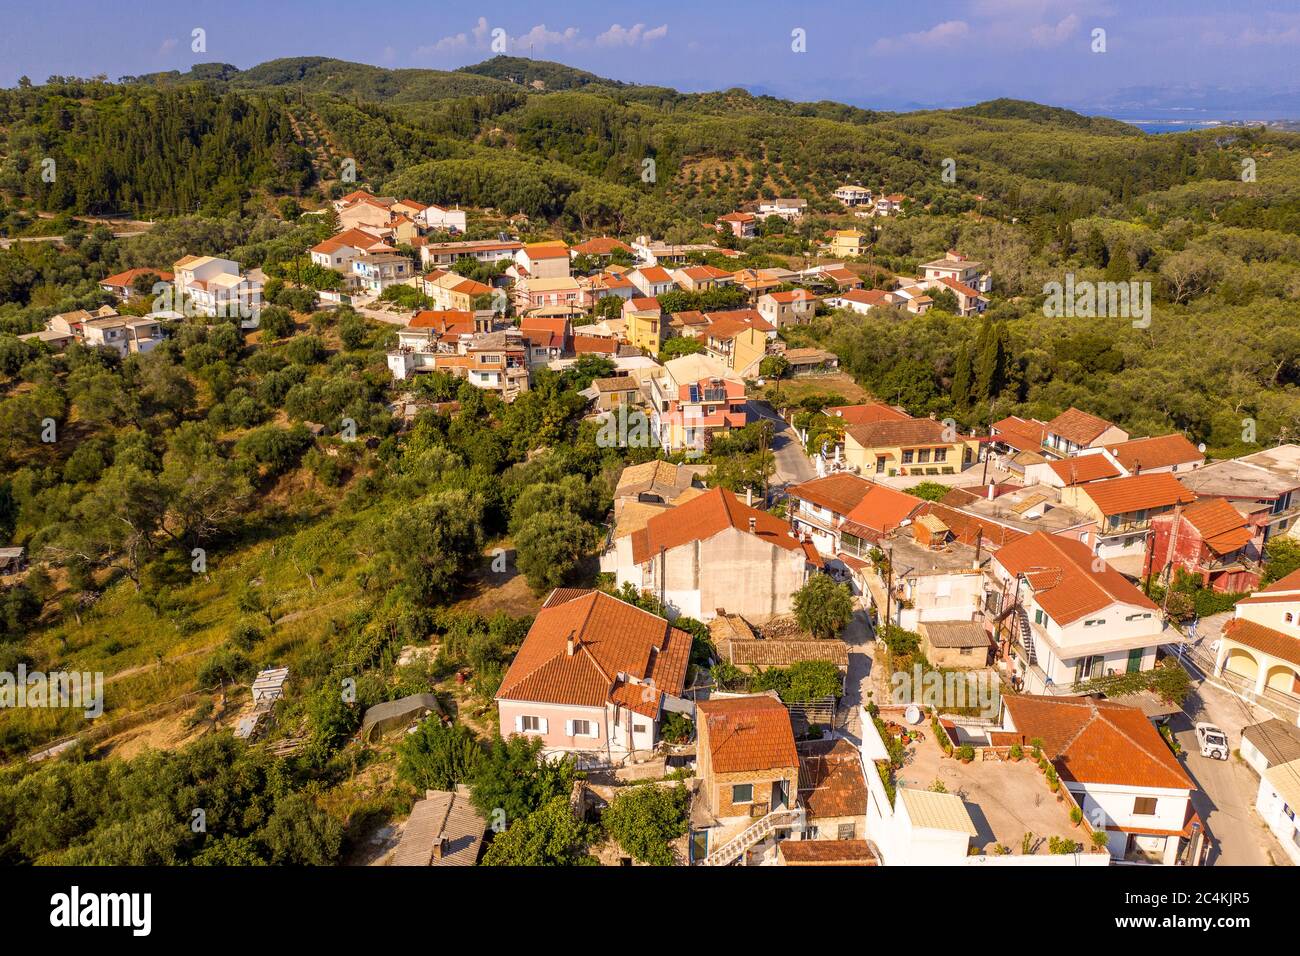 Tetti in terracotta in un villaggio greco idilliaco, vista aerea Foto Stock